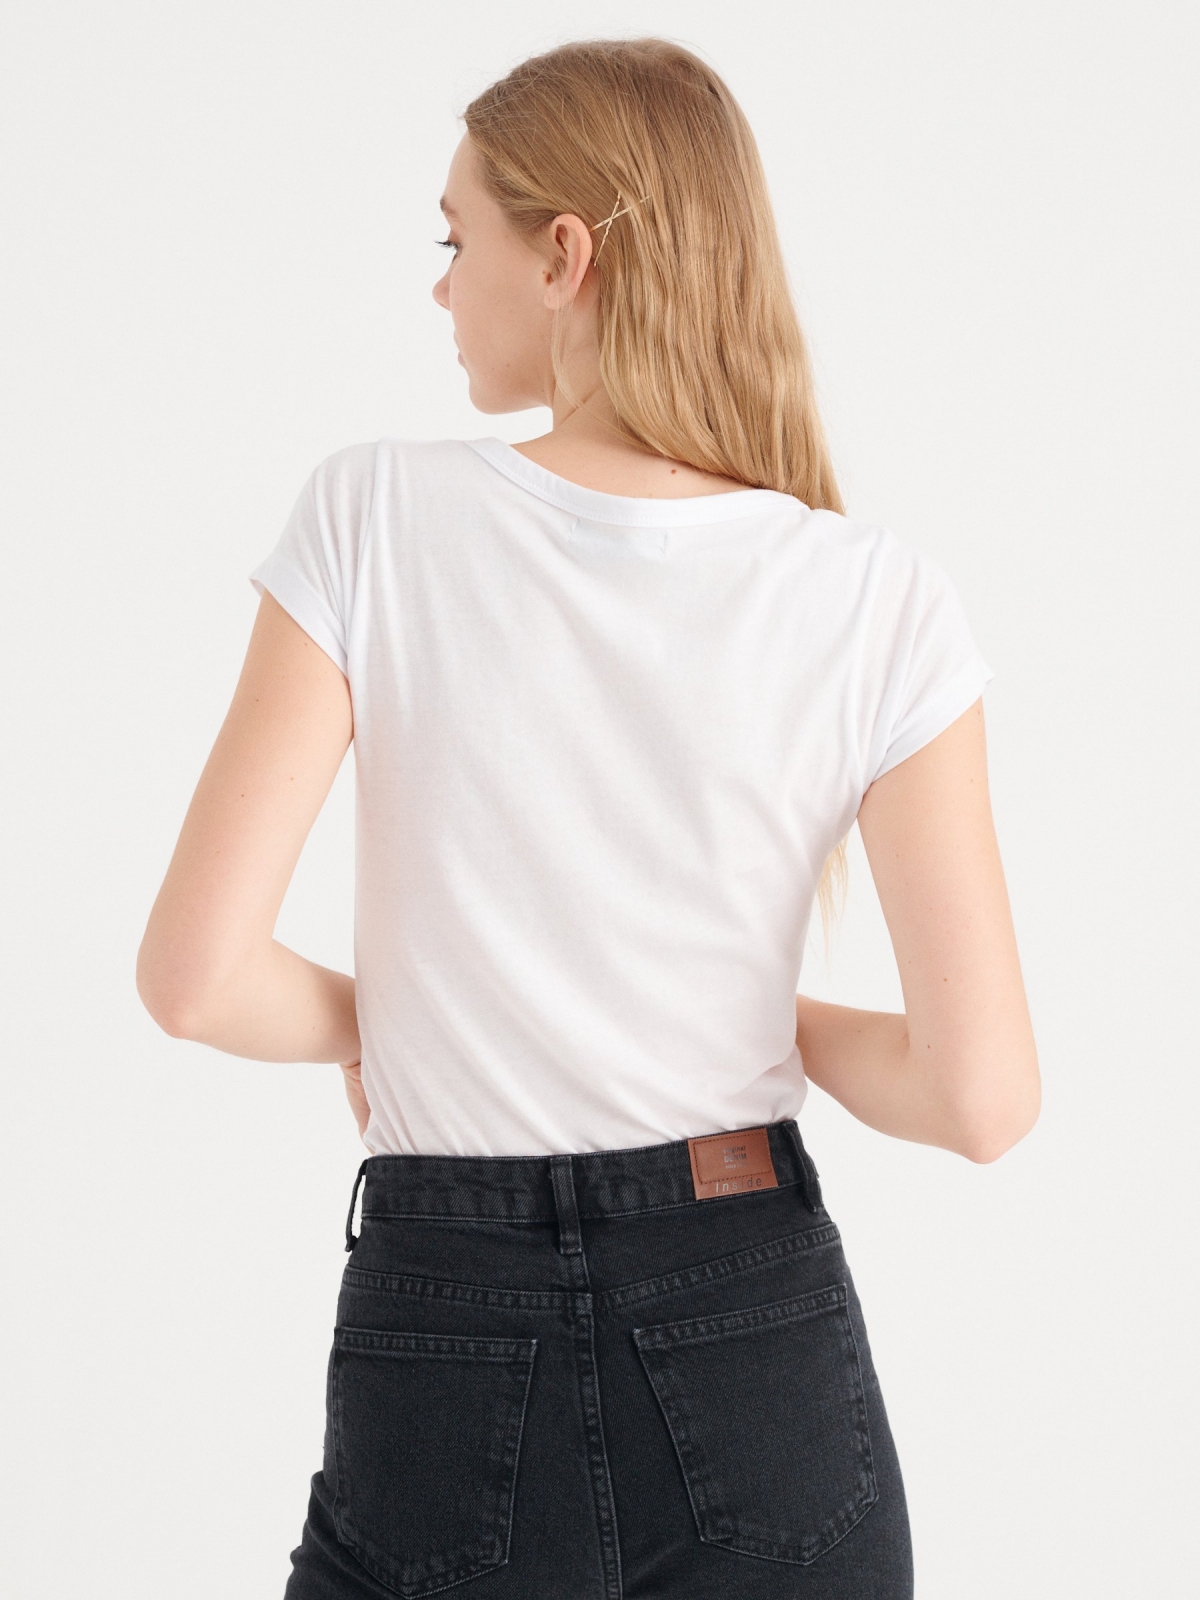 Basic V-neck T-shirt white middle back view